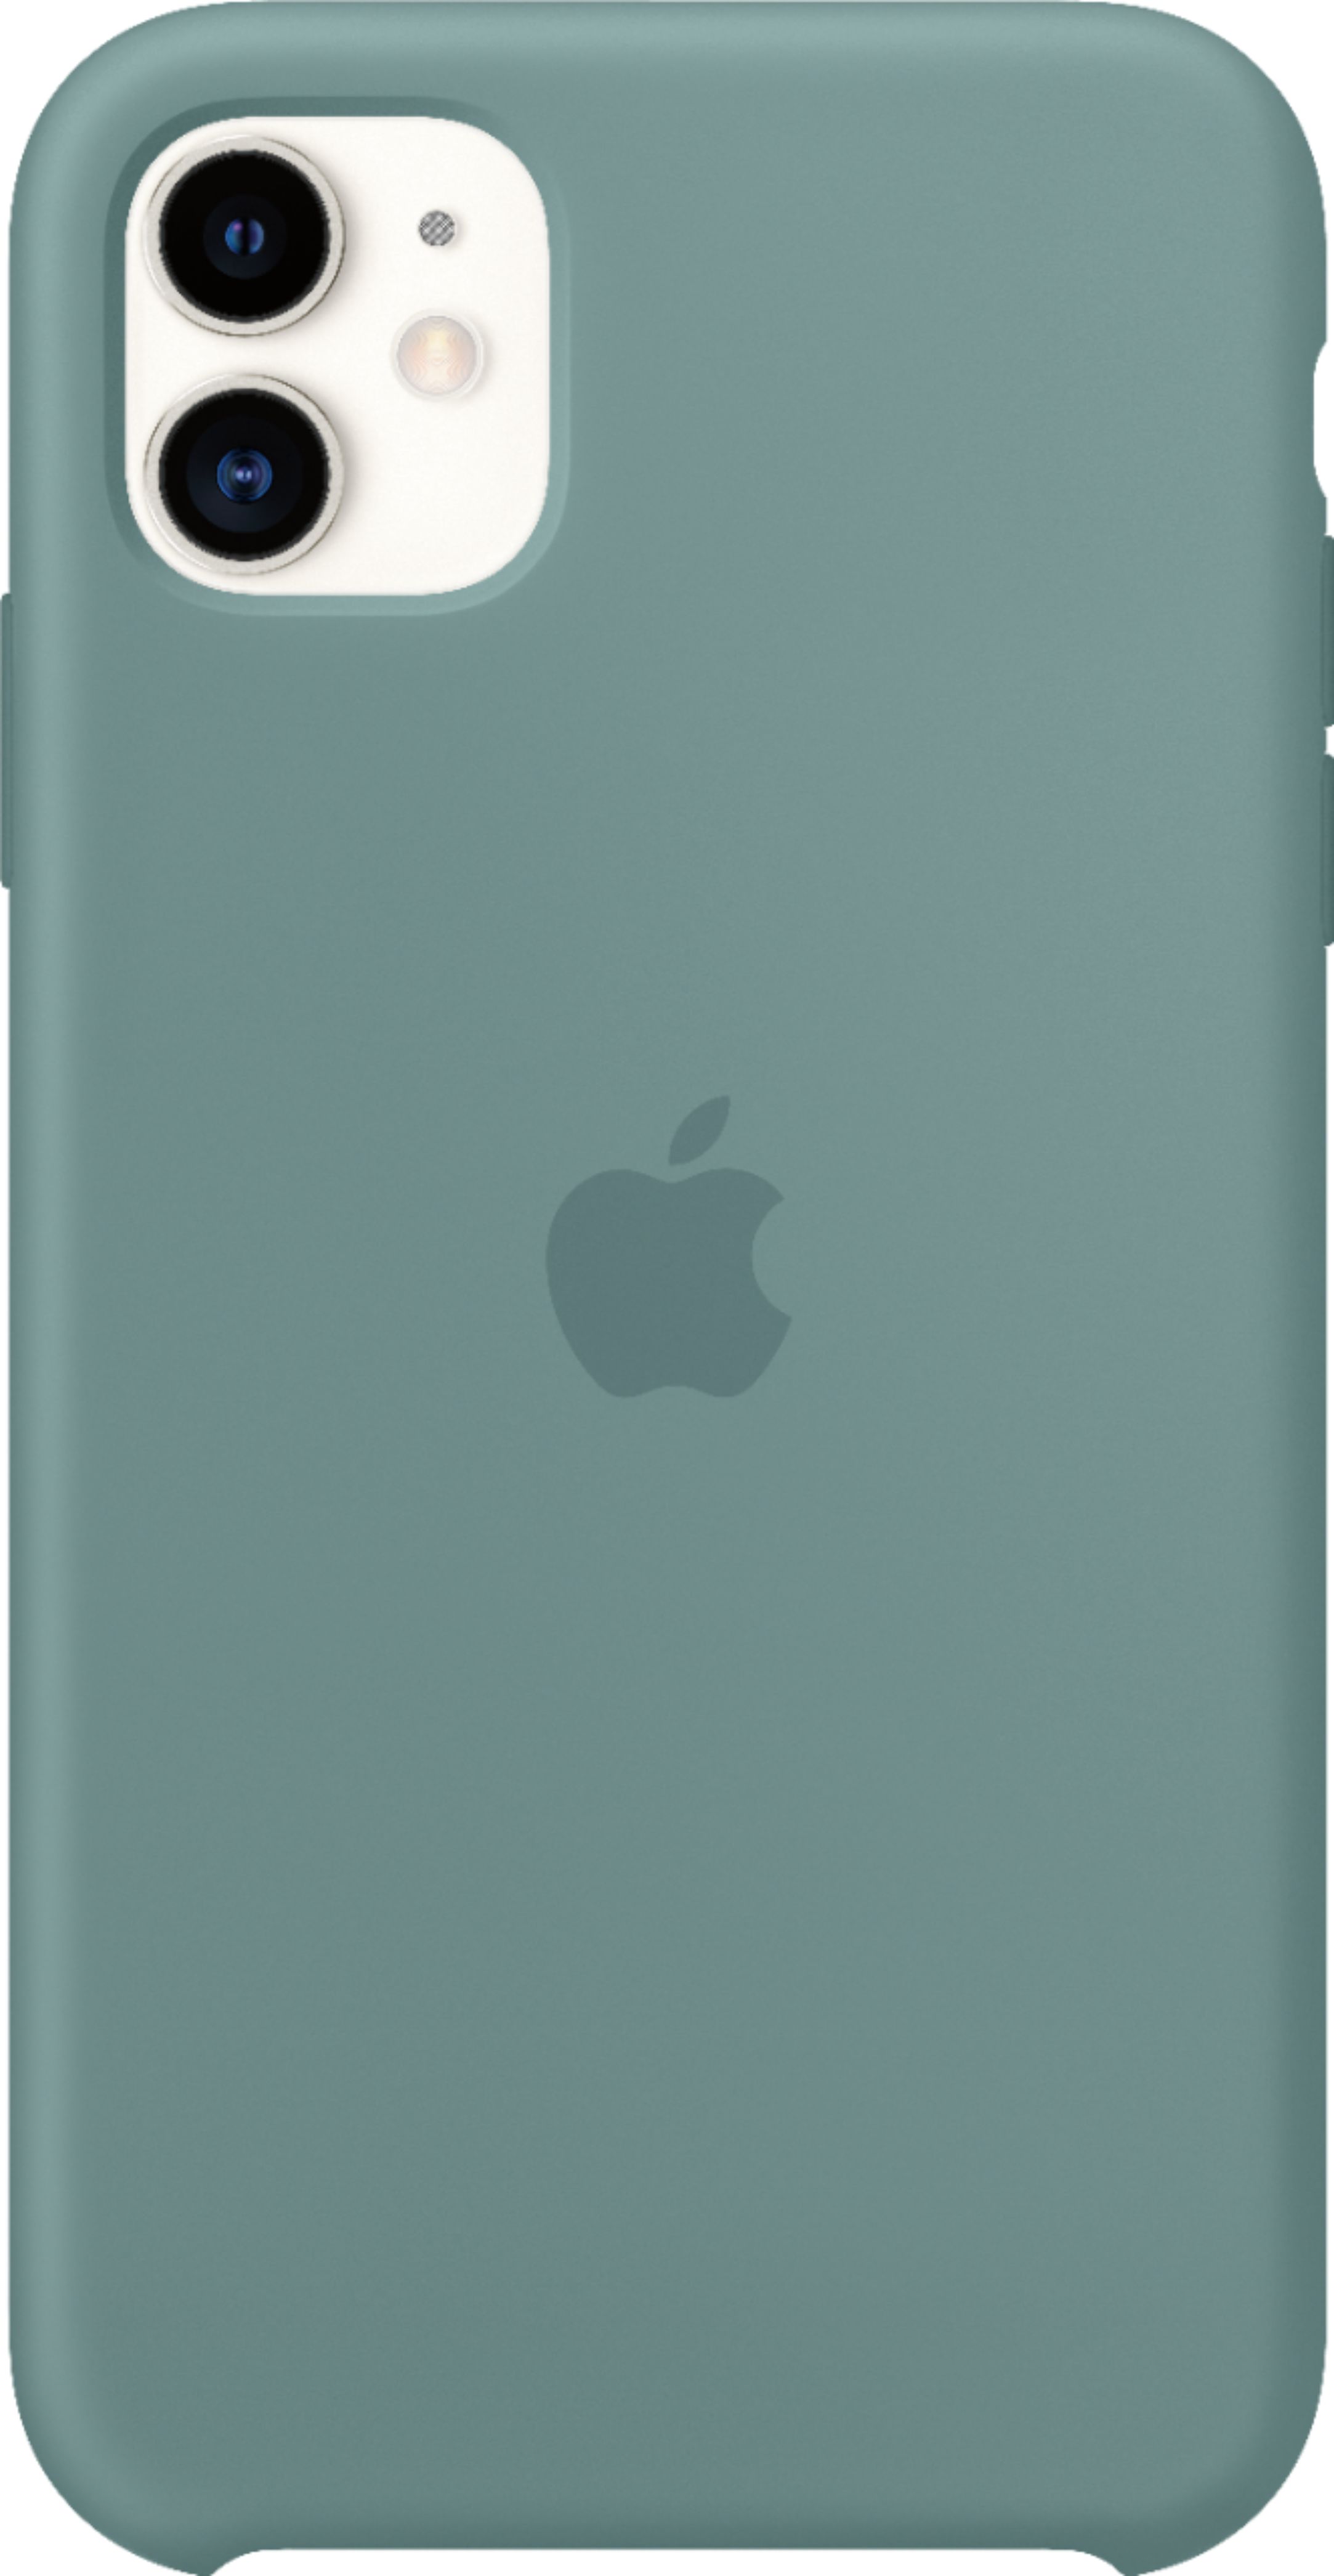 Apple - iPhone 11 Silicone Case - Cactus